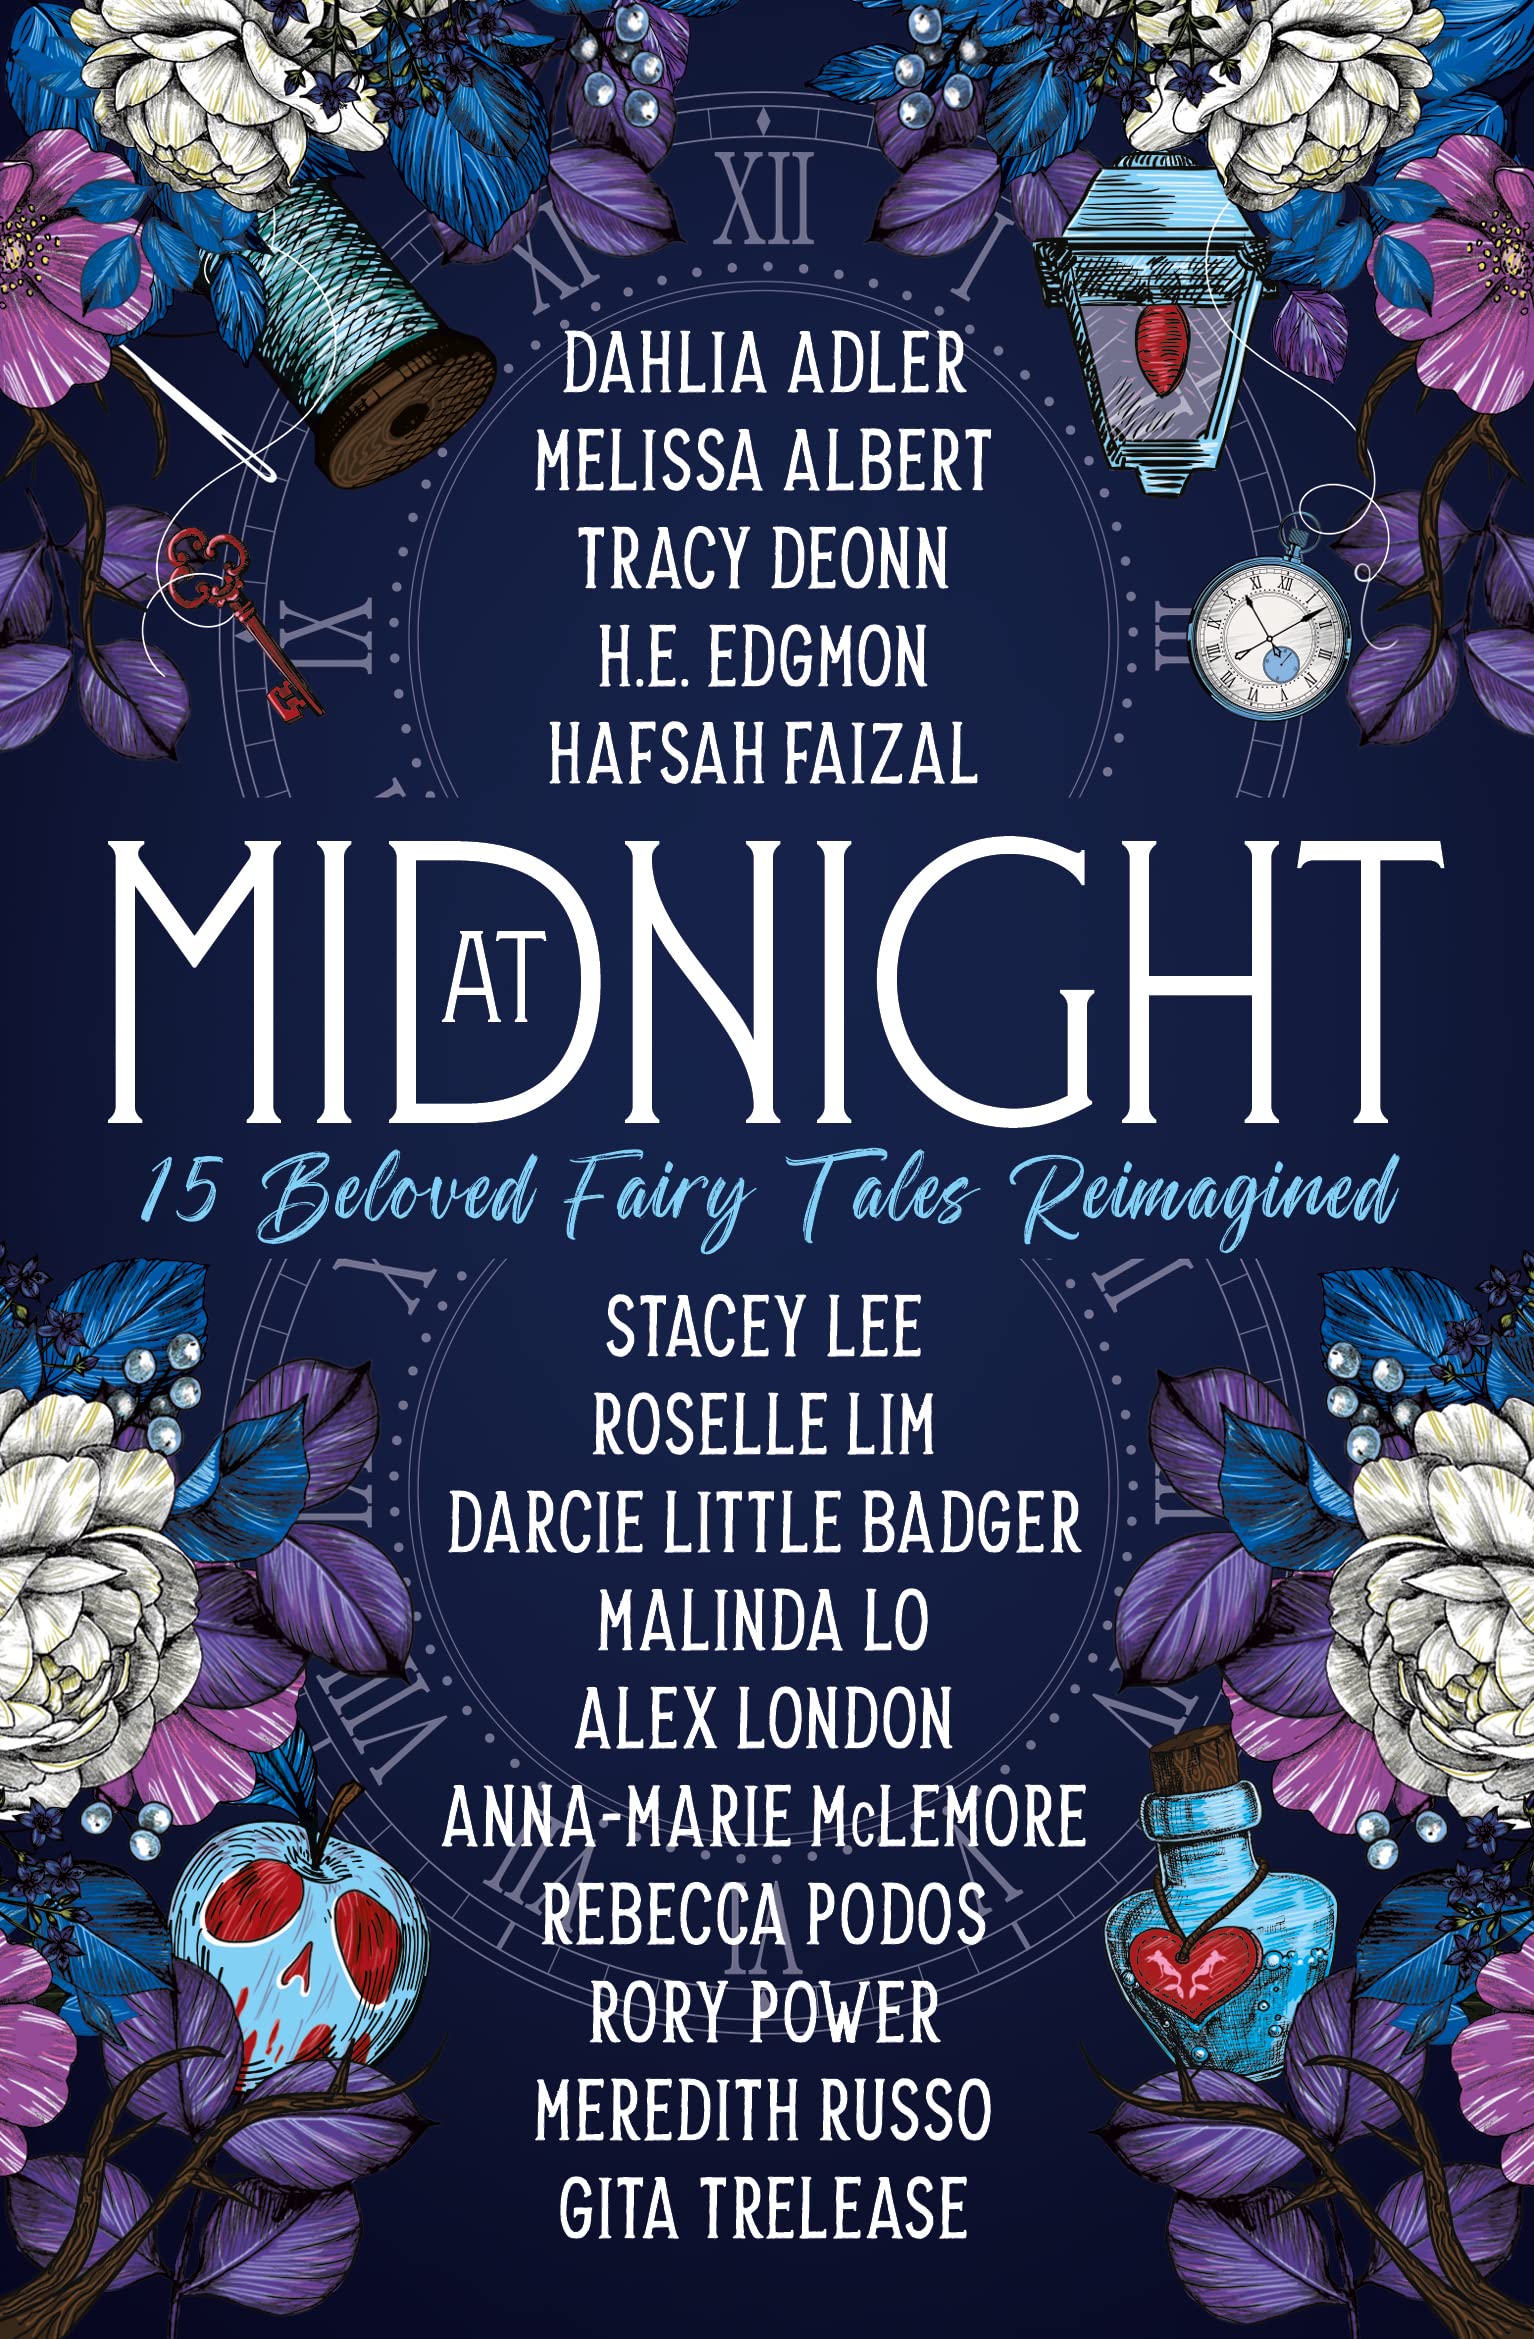 At Midnight | Dahlia Adler, Tracy Deonn, Melissa Albert, Hafsah Faizal, Rory Power